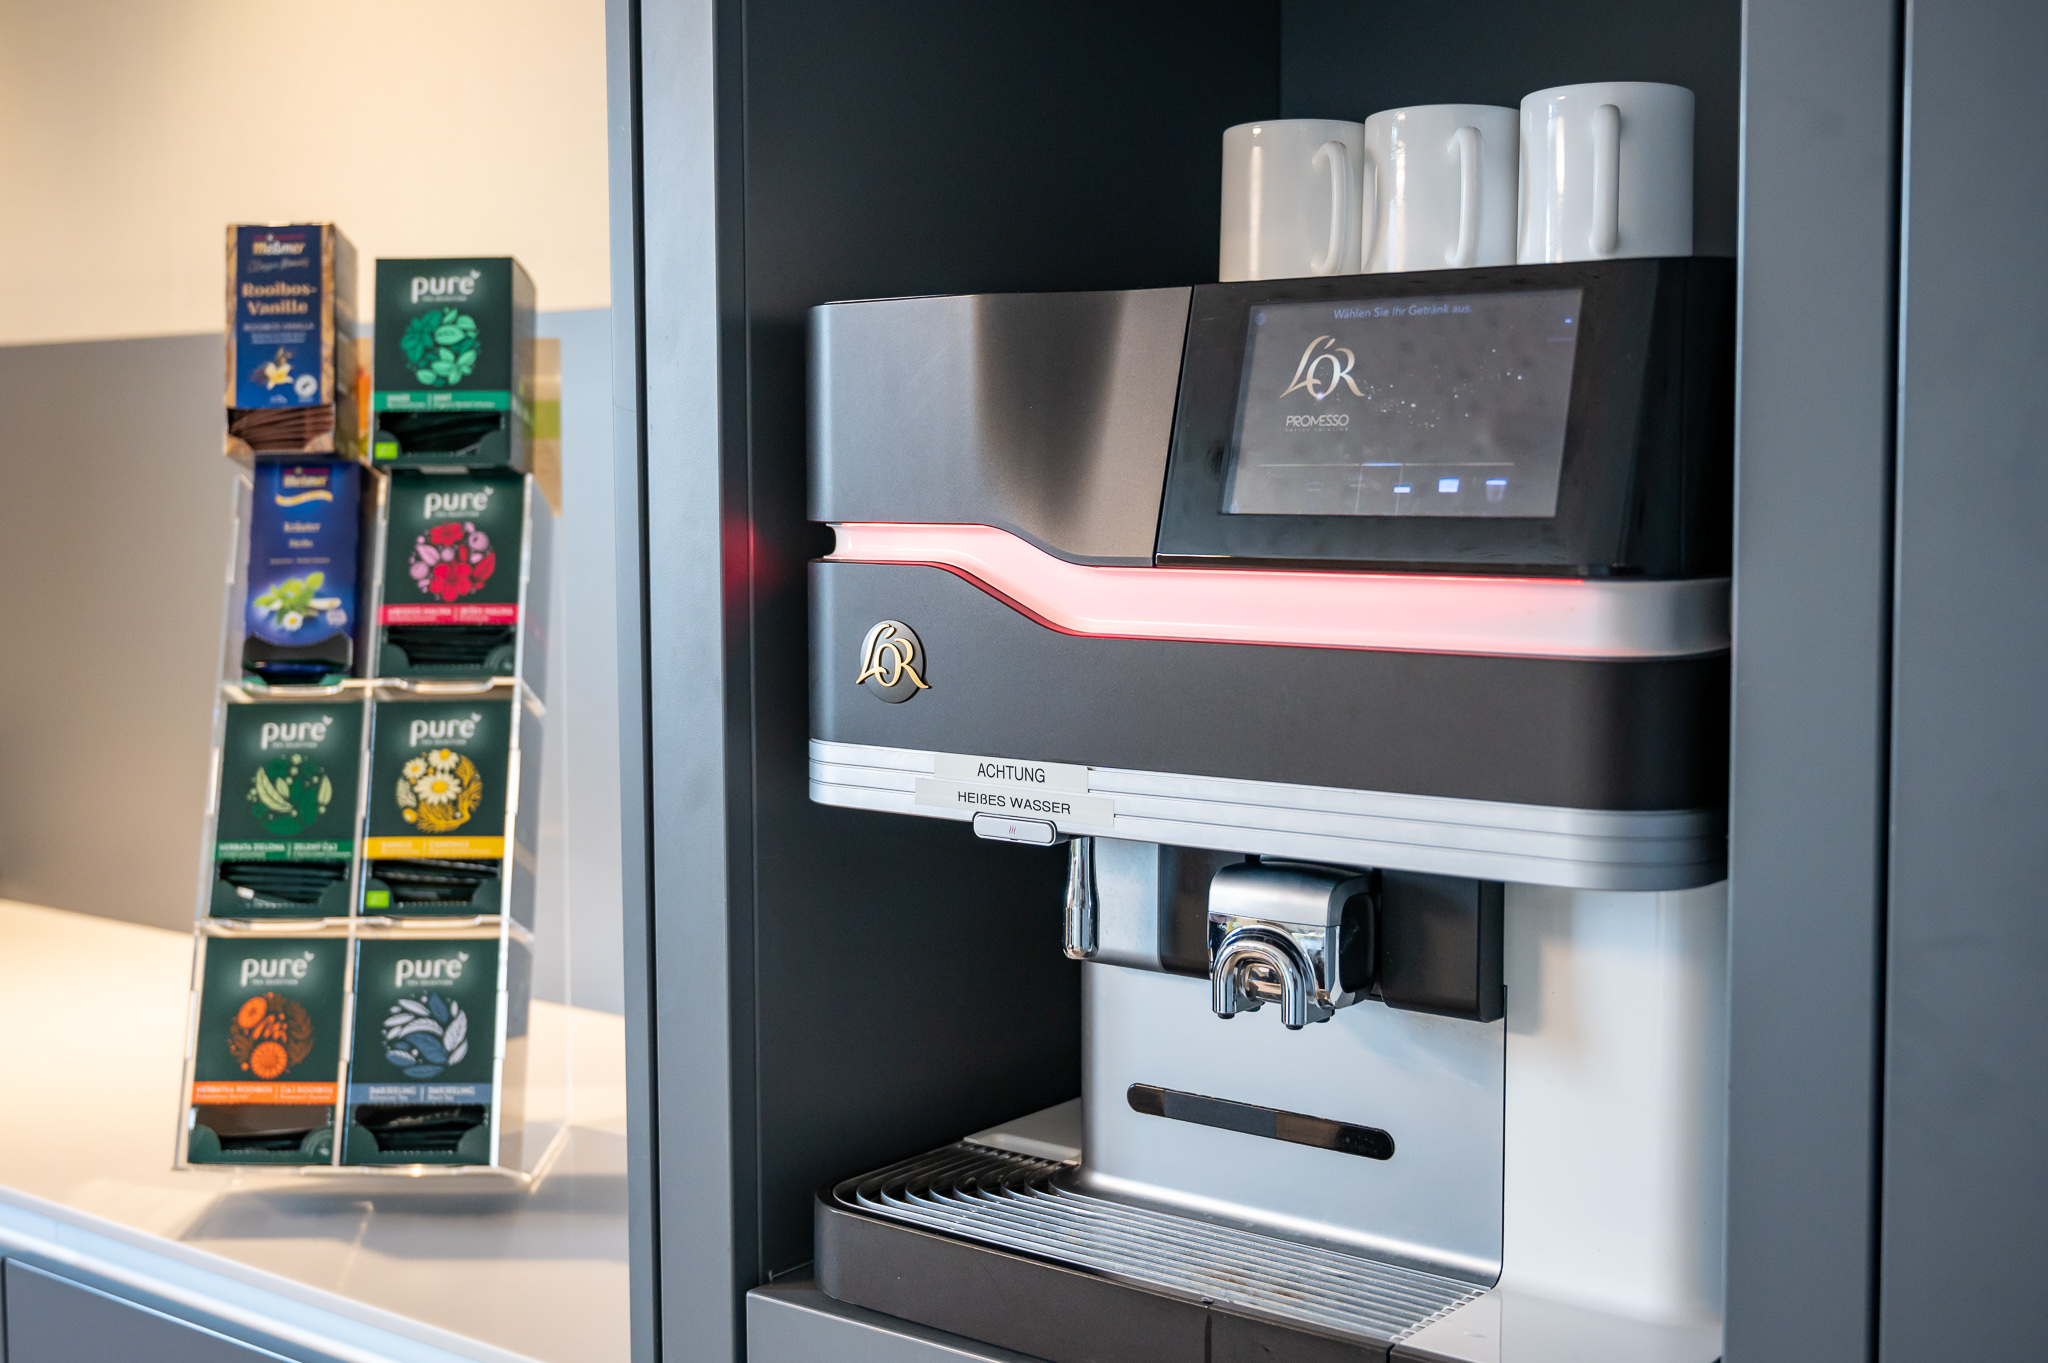 Jederzeit Kaffee, Tee oder Getränke gibt es in der modernen Lounge auf der Wahlleistungsstation.